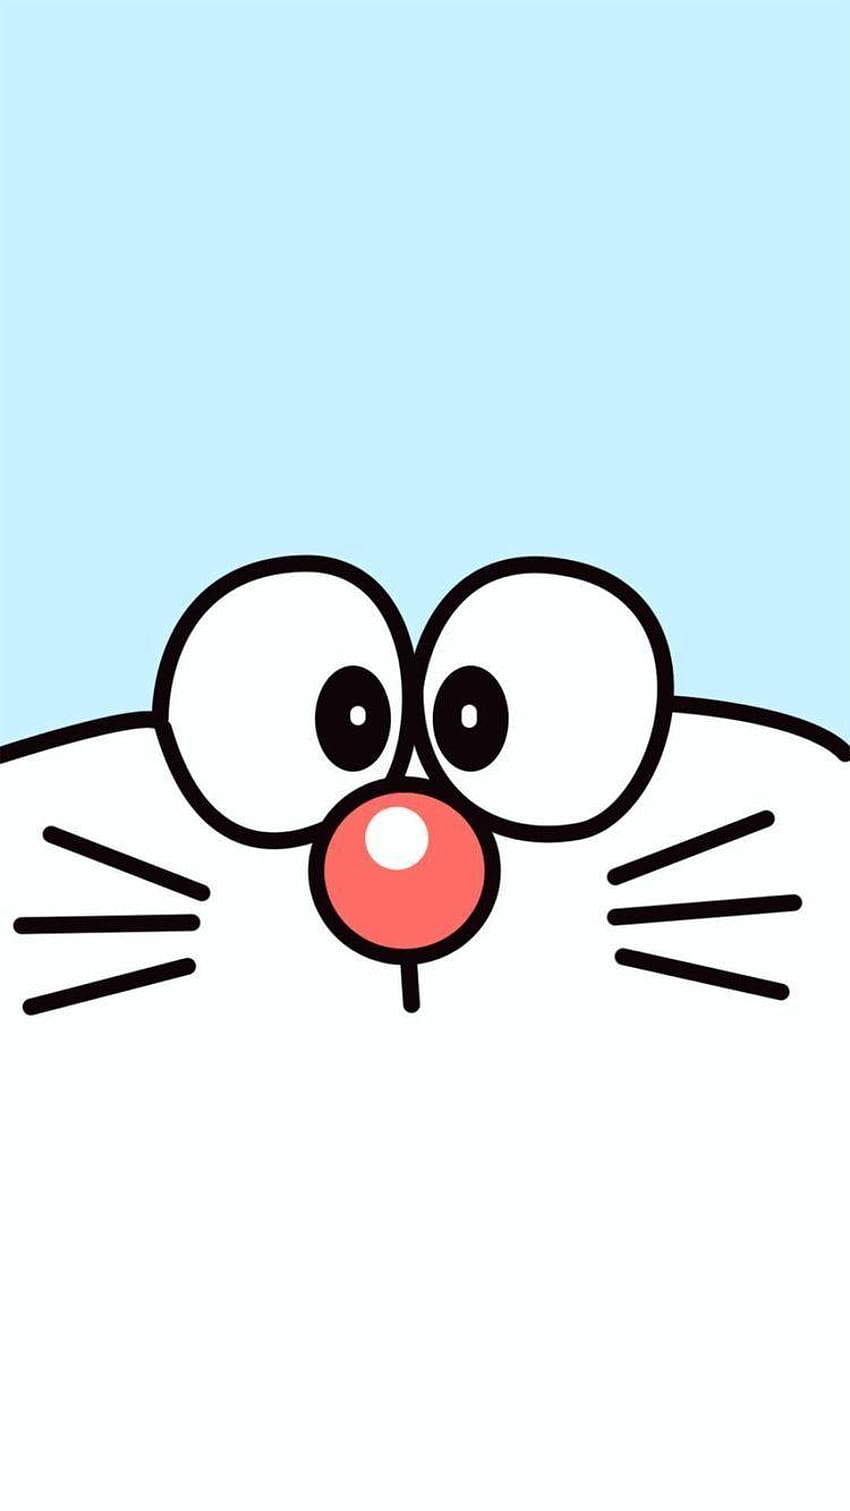 Doraemon: Xem hình Doraemon để có một trải nghiệm kì diệu với chú mèo máy đáng yêu này. Bạn sẽ được khám phá những cuộc phiêu lưu thú vị của Doraemon cùng bạn bè, cùng với những hành trang tuyệt vời và những bản phát sóng hài hước.